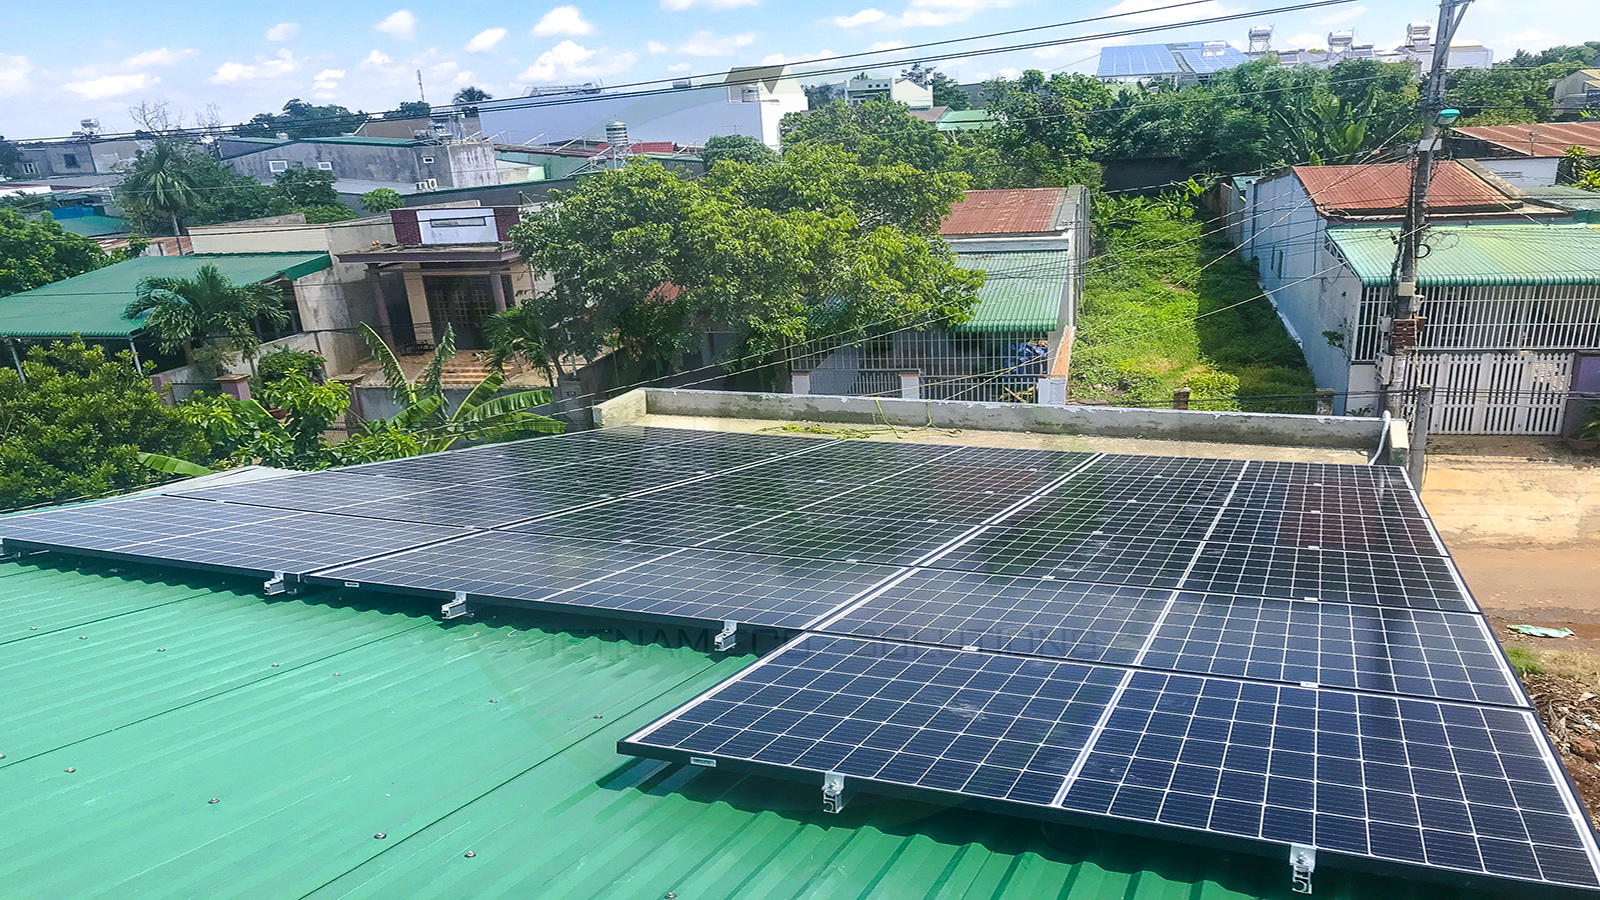 VES lắp đặt điện năng lượng mặt trời cho khách hàng anh Uyên tại Đắk Lắk